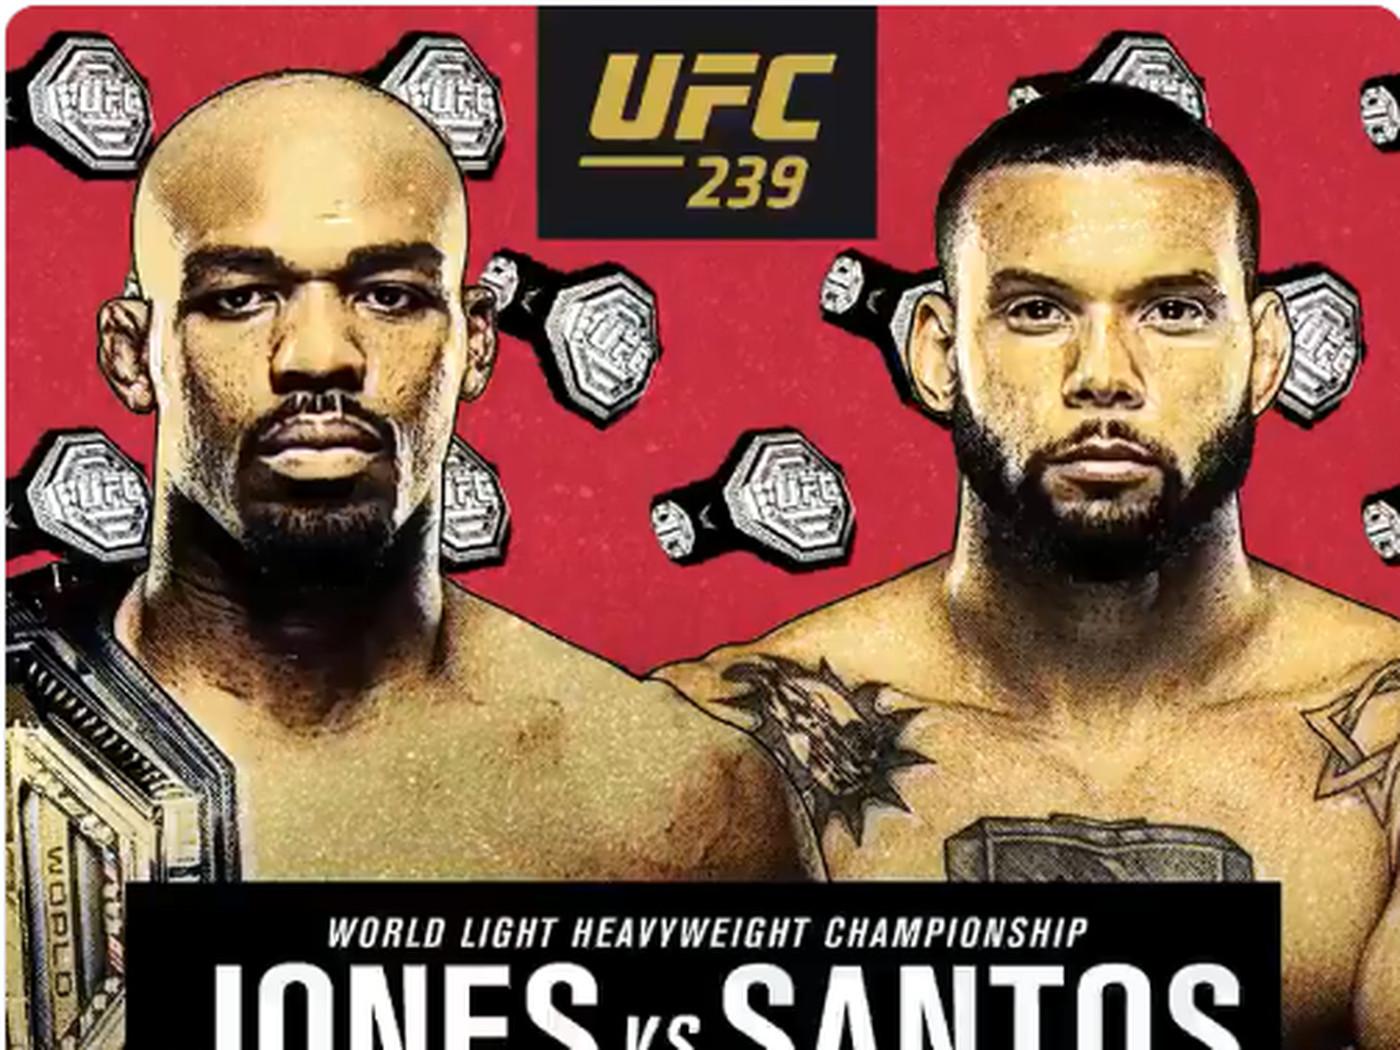 UFC 239 tickets: Seats online for 'Jones vs Santos' event